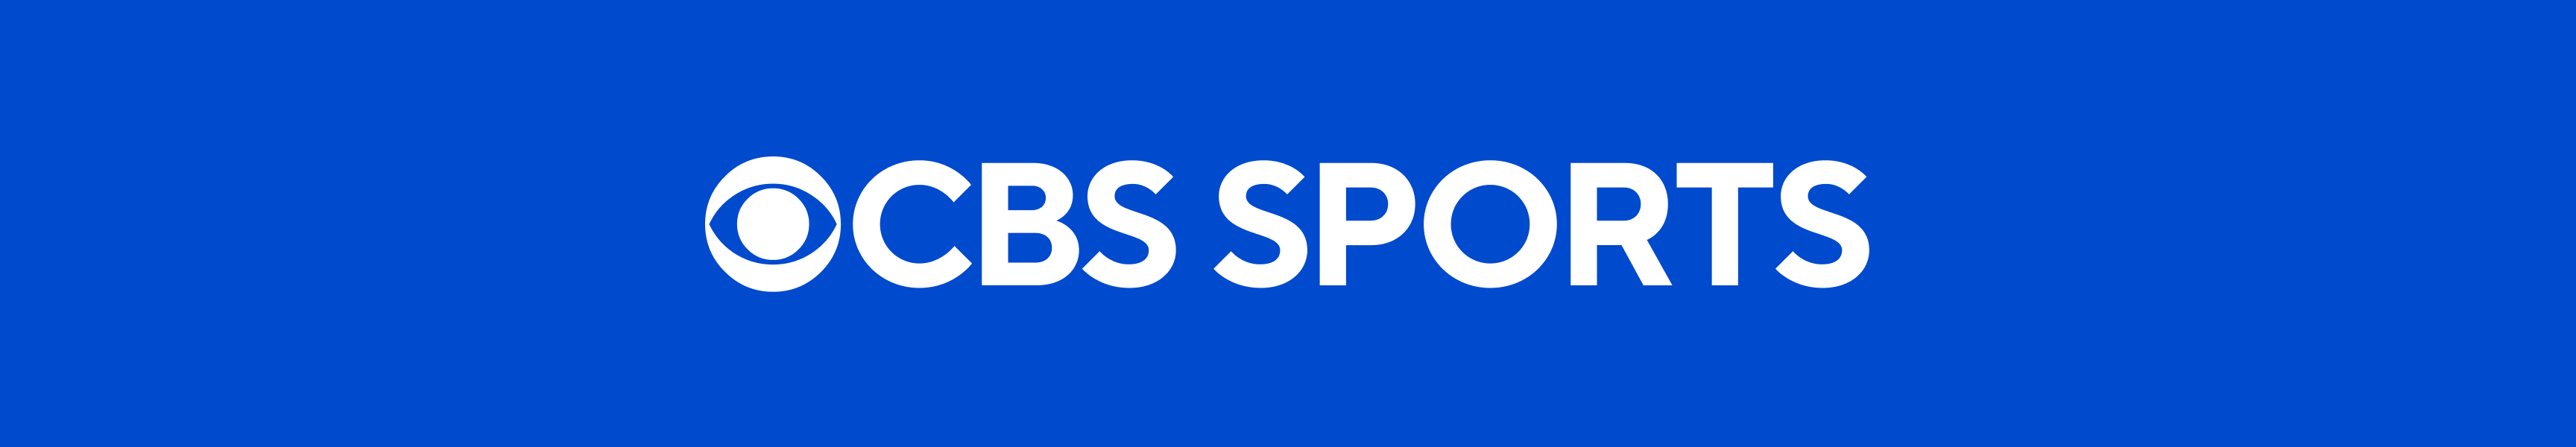 T-shirts CBS Sports